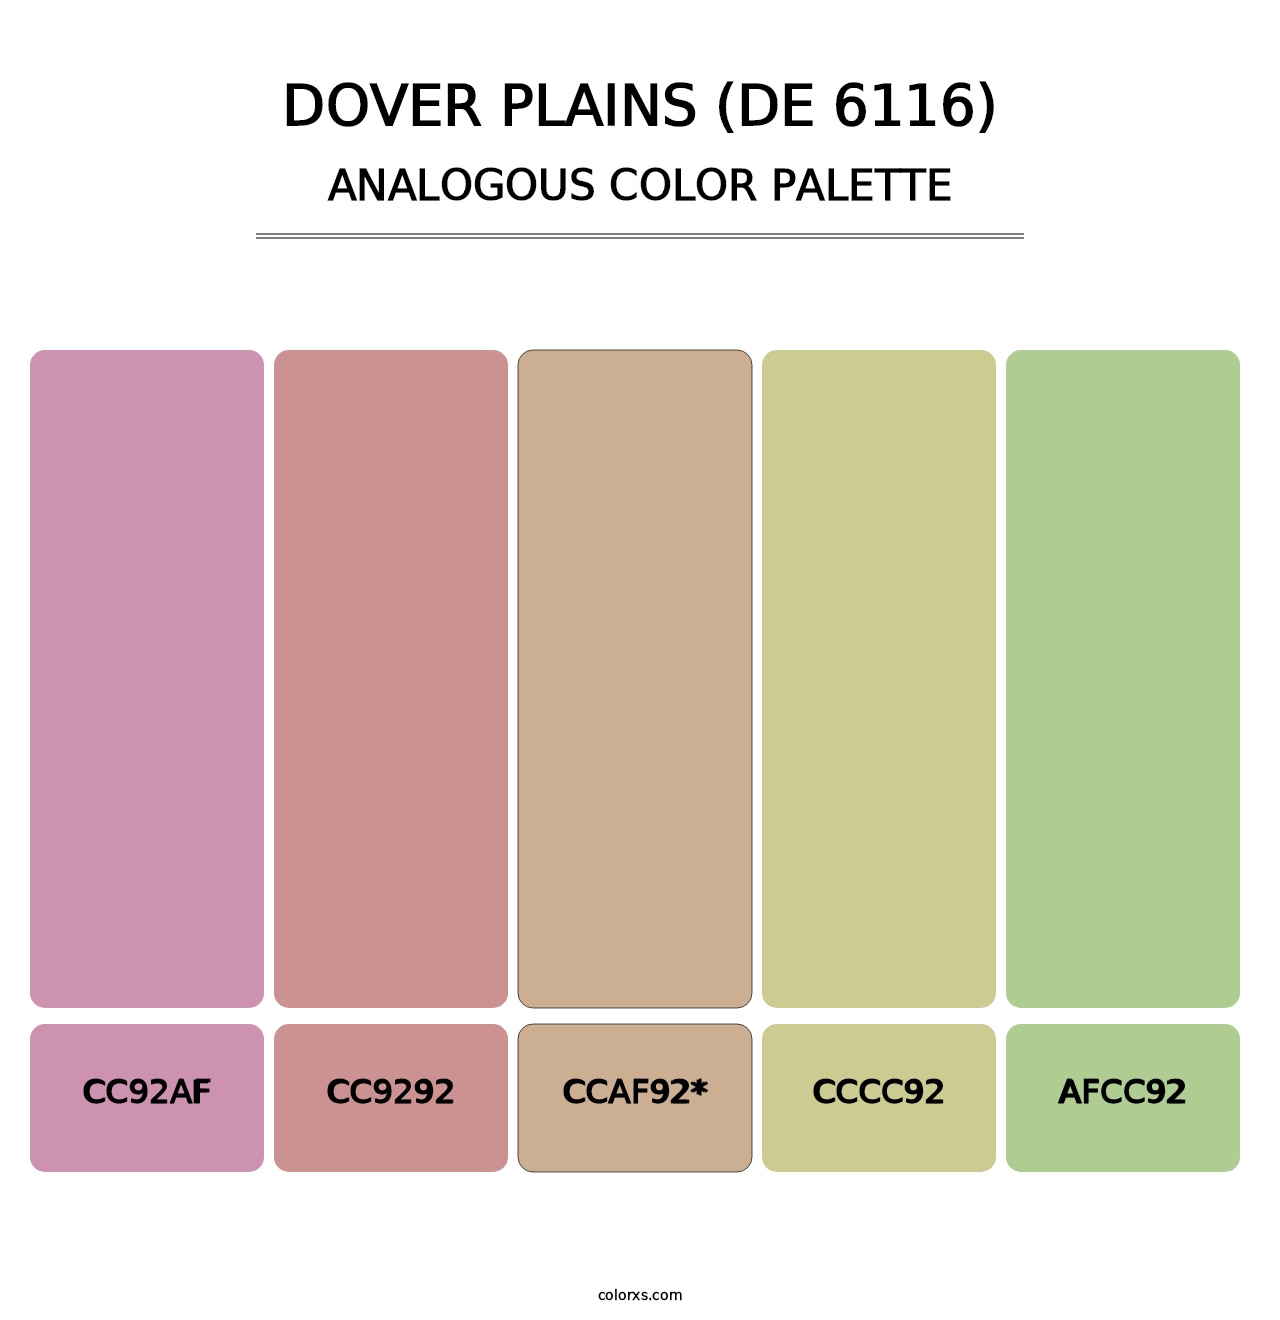 Dover Plains (DE 6116) - Analogous Color Palette